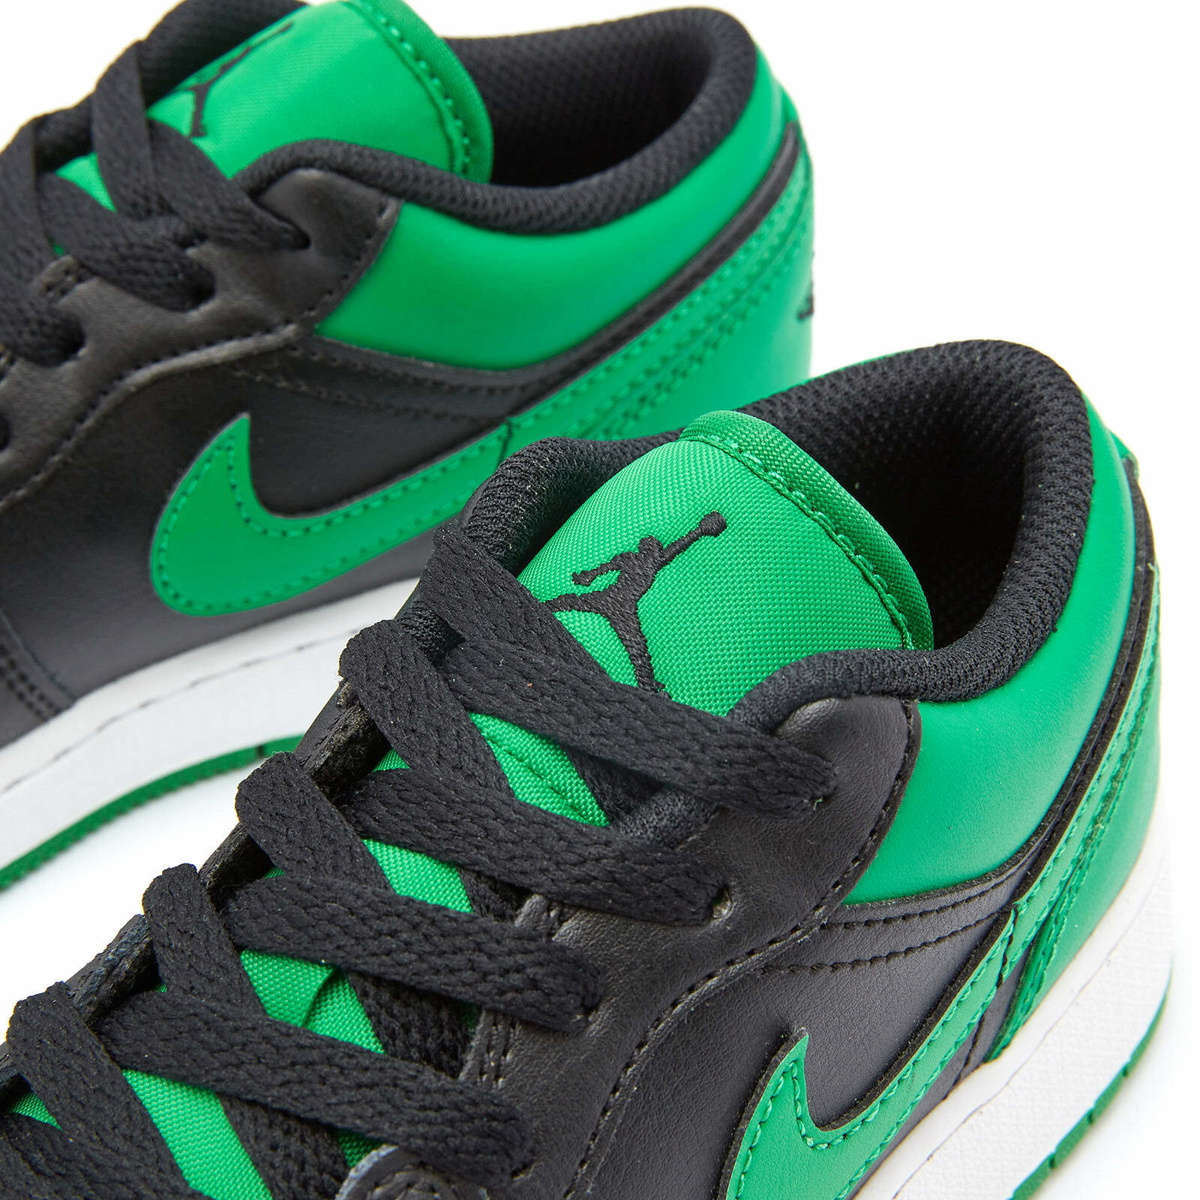 Air Jordan 1 Low BG Sneakers in Black/Lucky Green Nike Jordan Brand